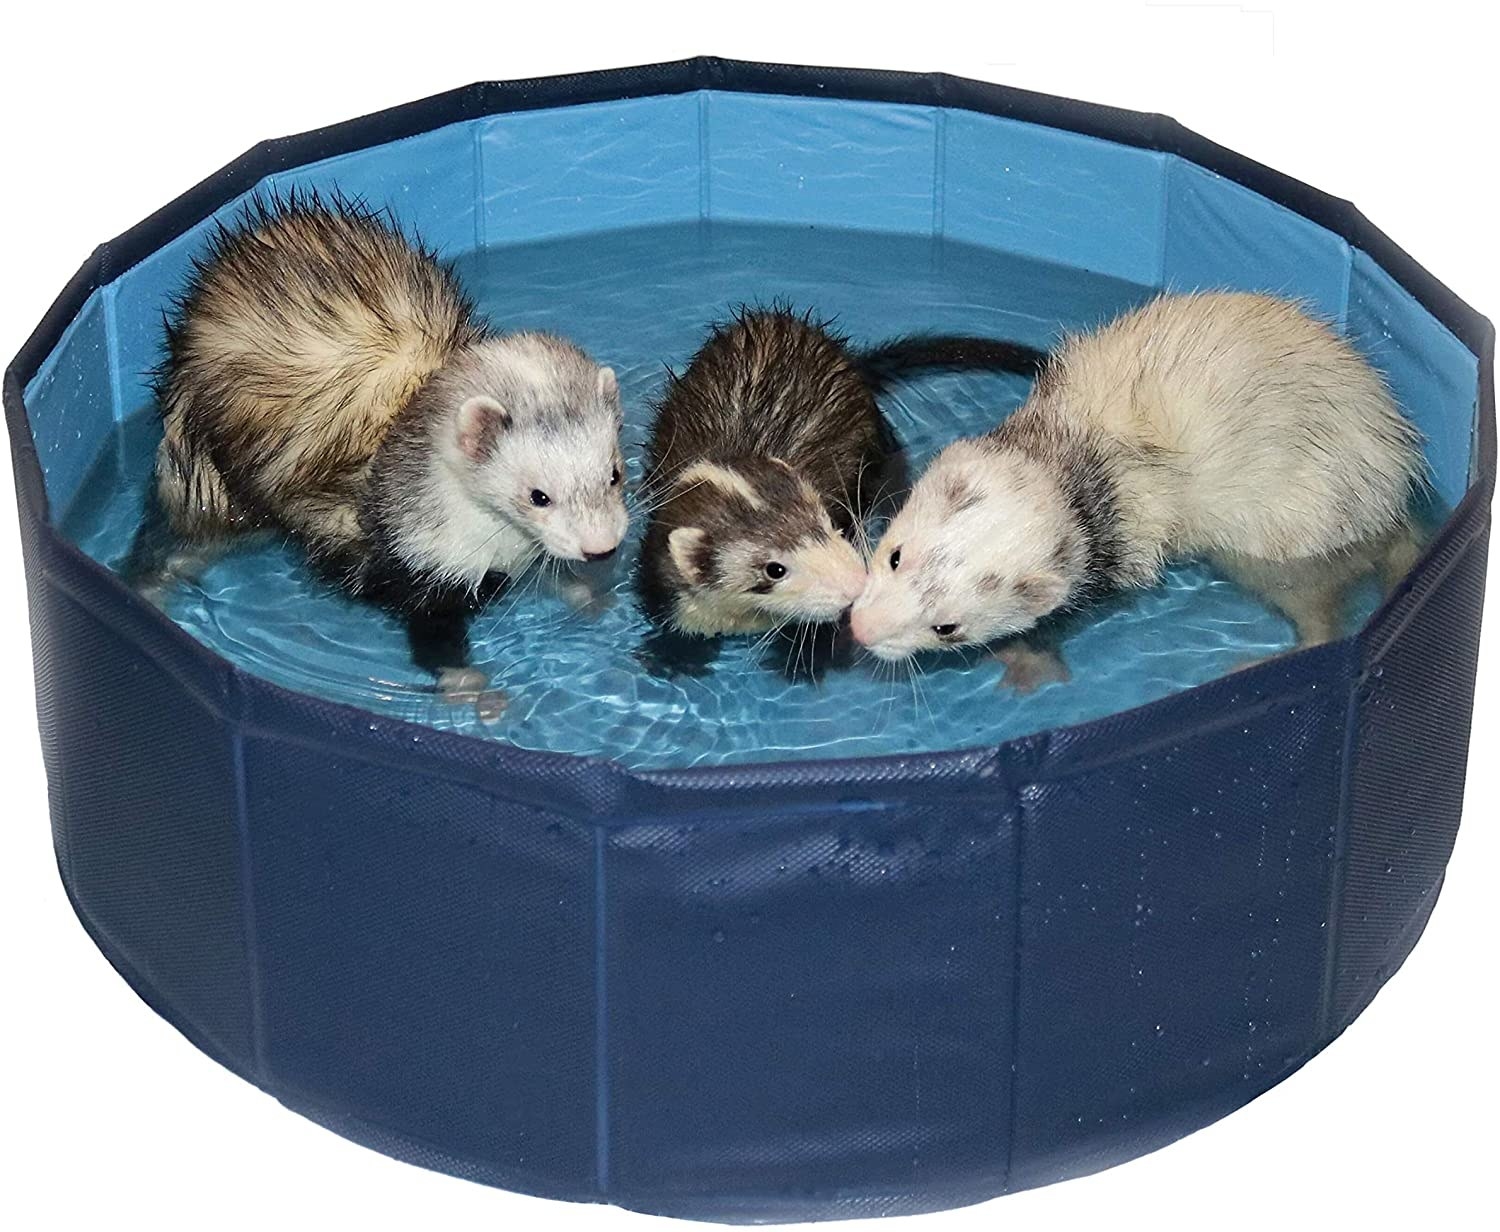 Three ferrets playing in a ferret pool